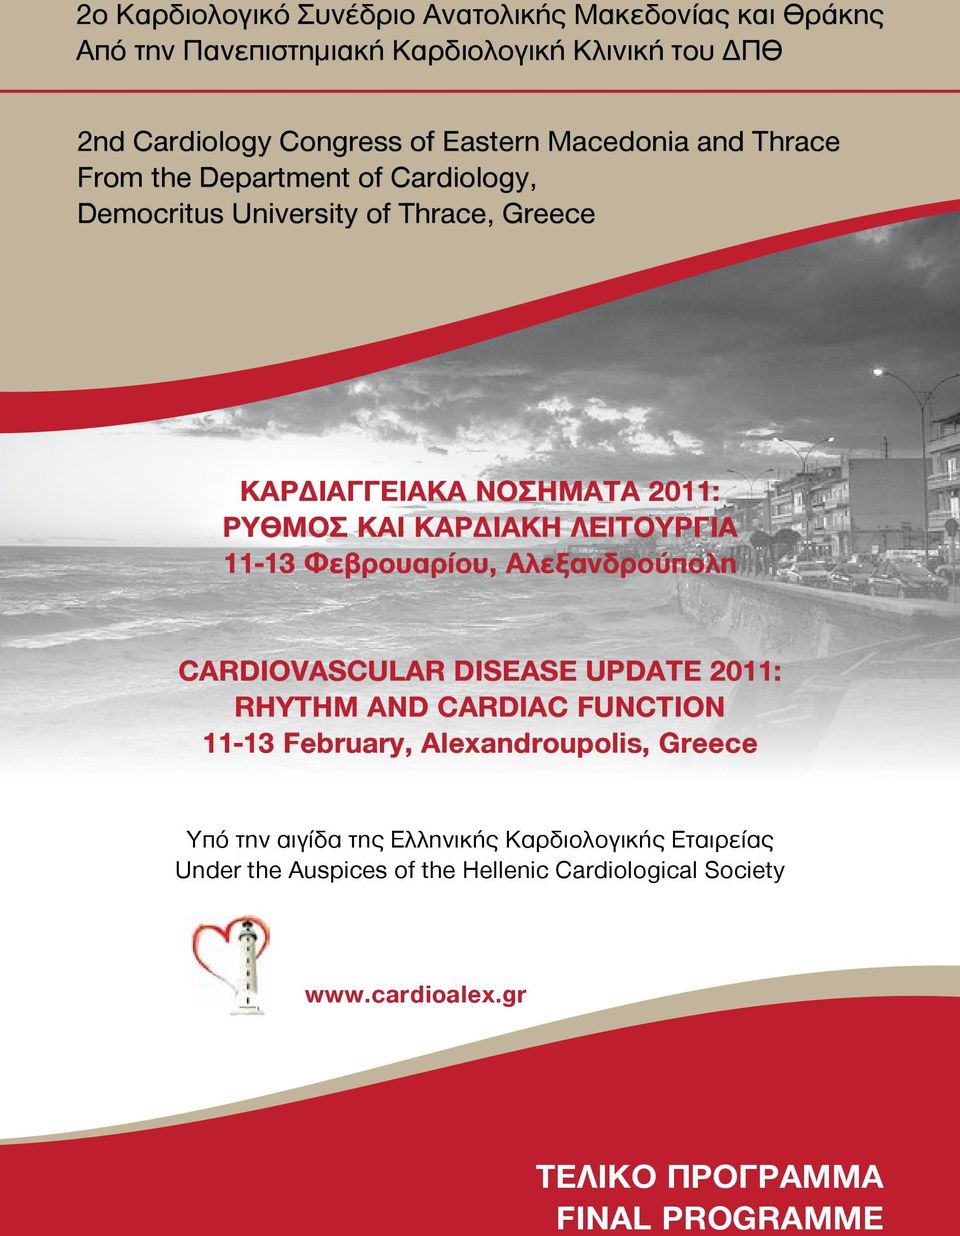 ΛΕΙΤΟΥΡΓΙΑ 11-13 Φεβρουαρίου, Αλεξανδρούπολη CARDIOVASCULAR DISEASE UPDATE 2011: RHYTHM AND CARDIAC FUNCTION 11-13 February, Alexandroupolis, Greece